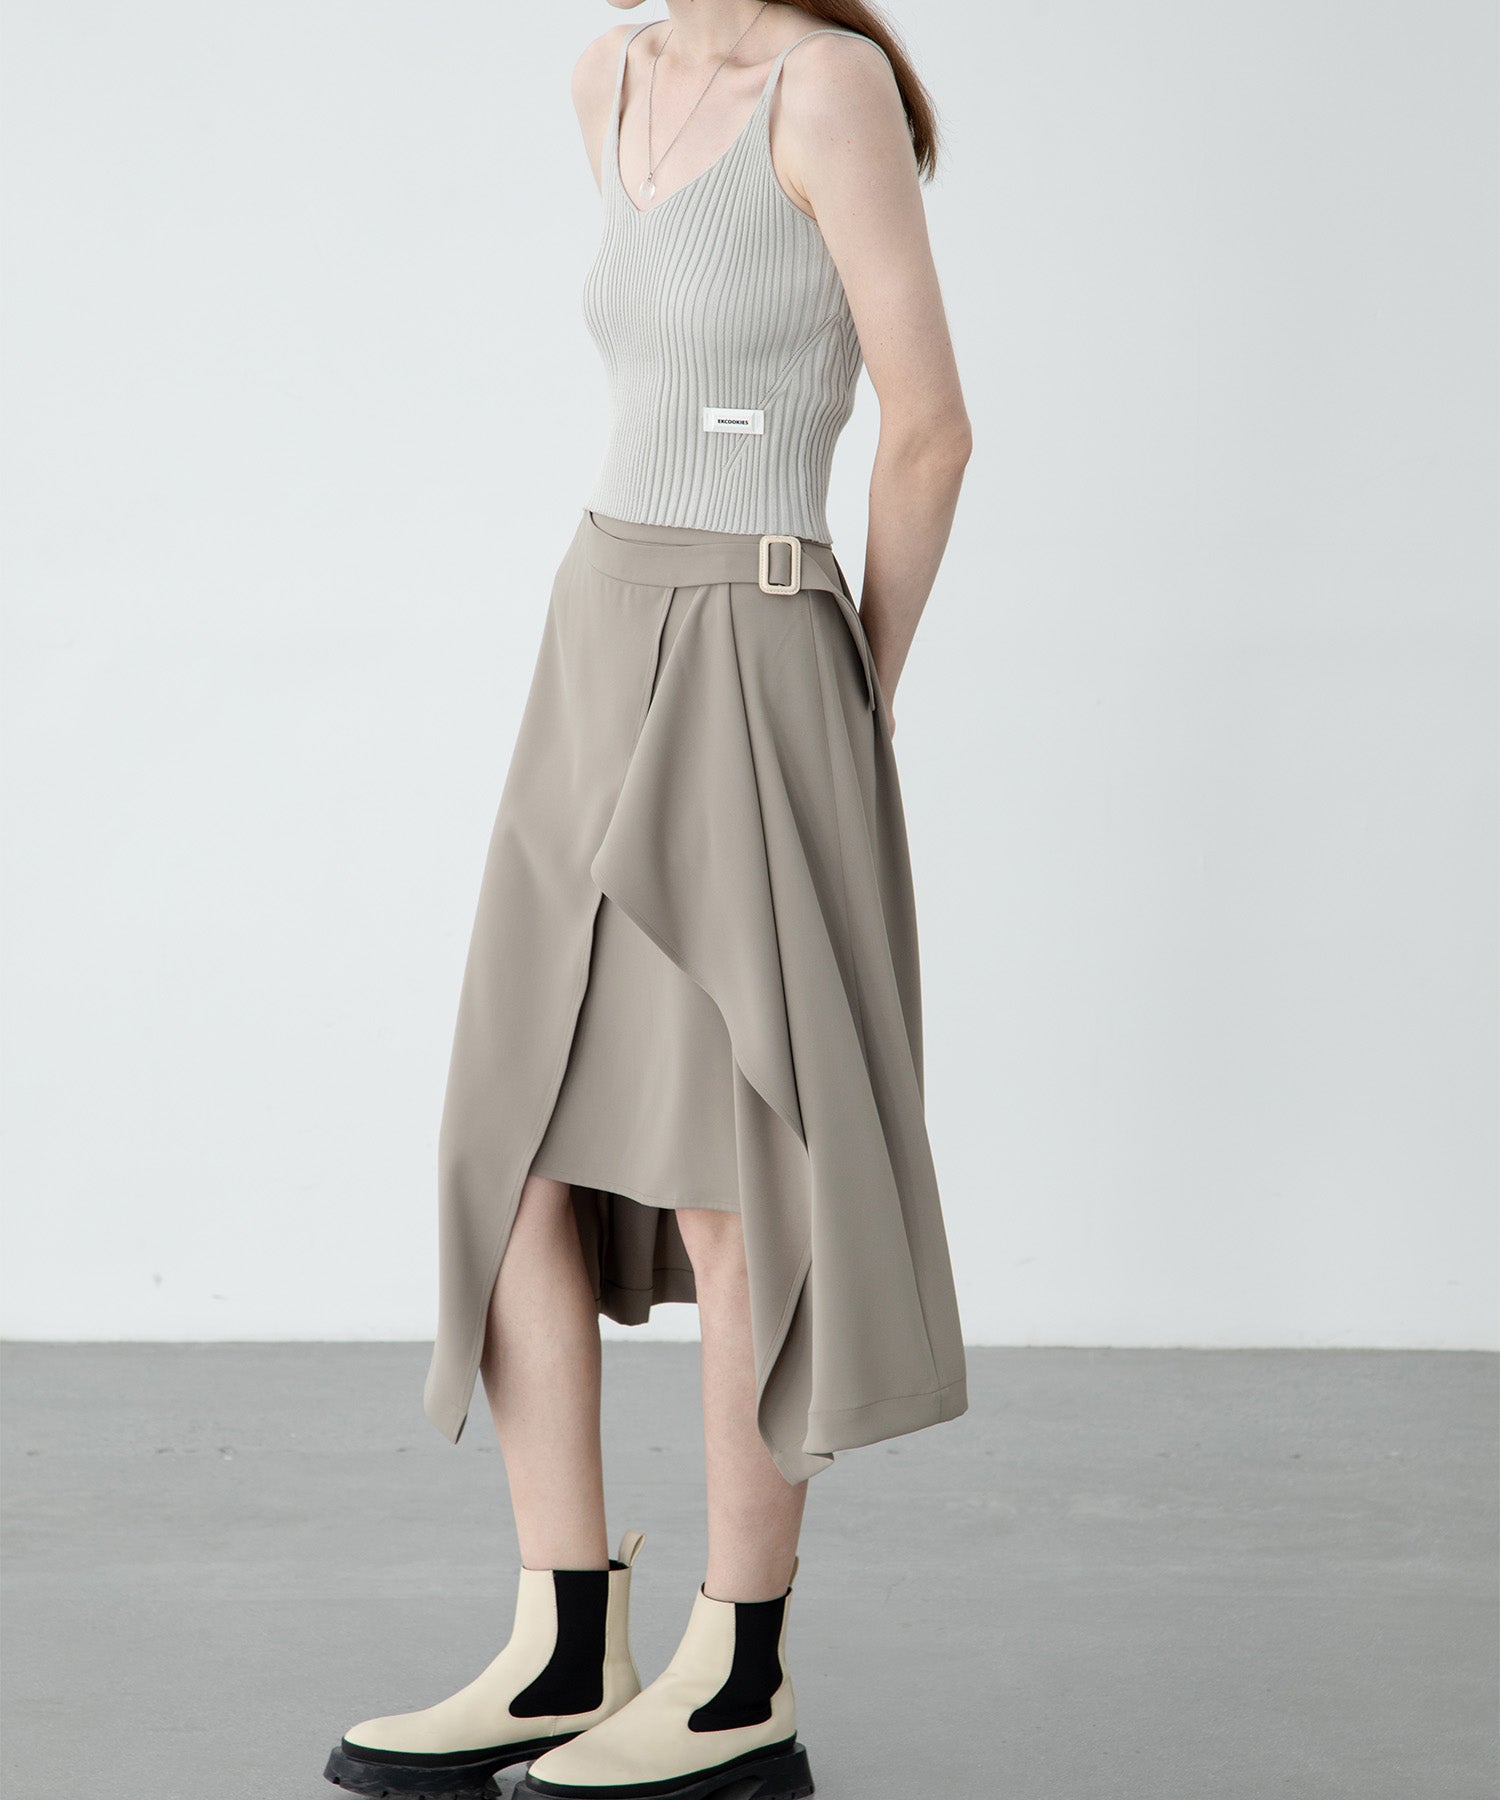 draped layered skirt